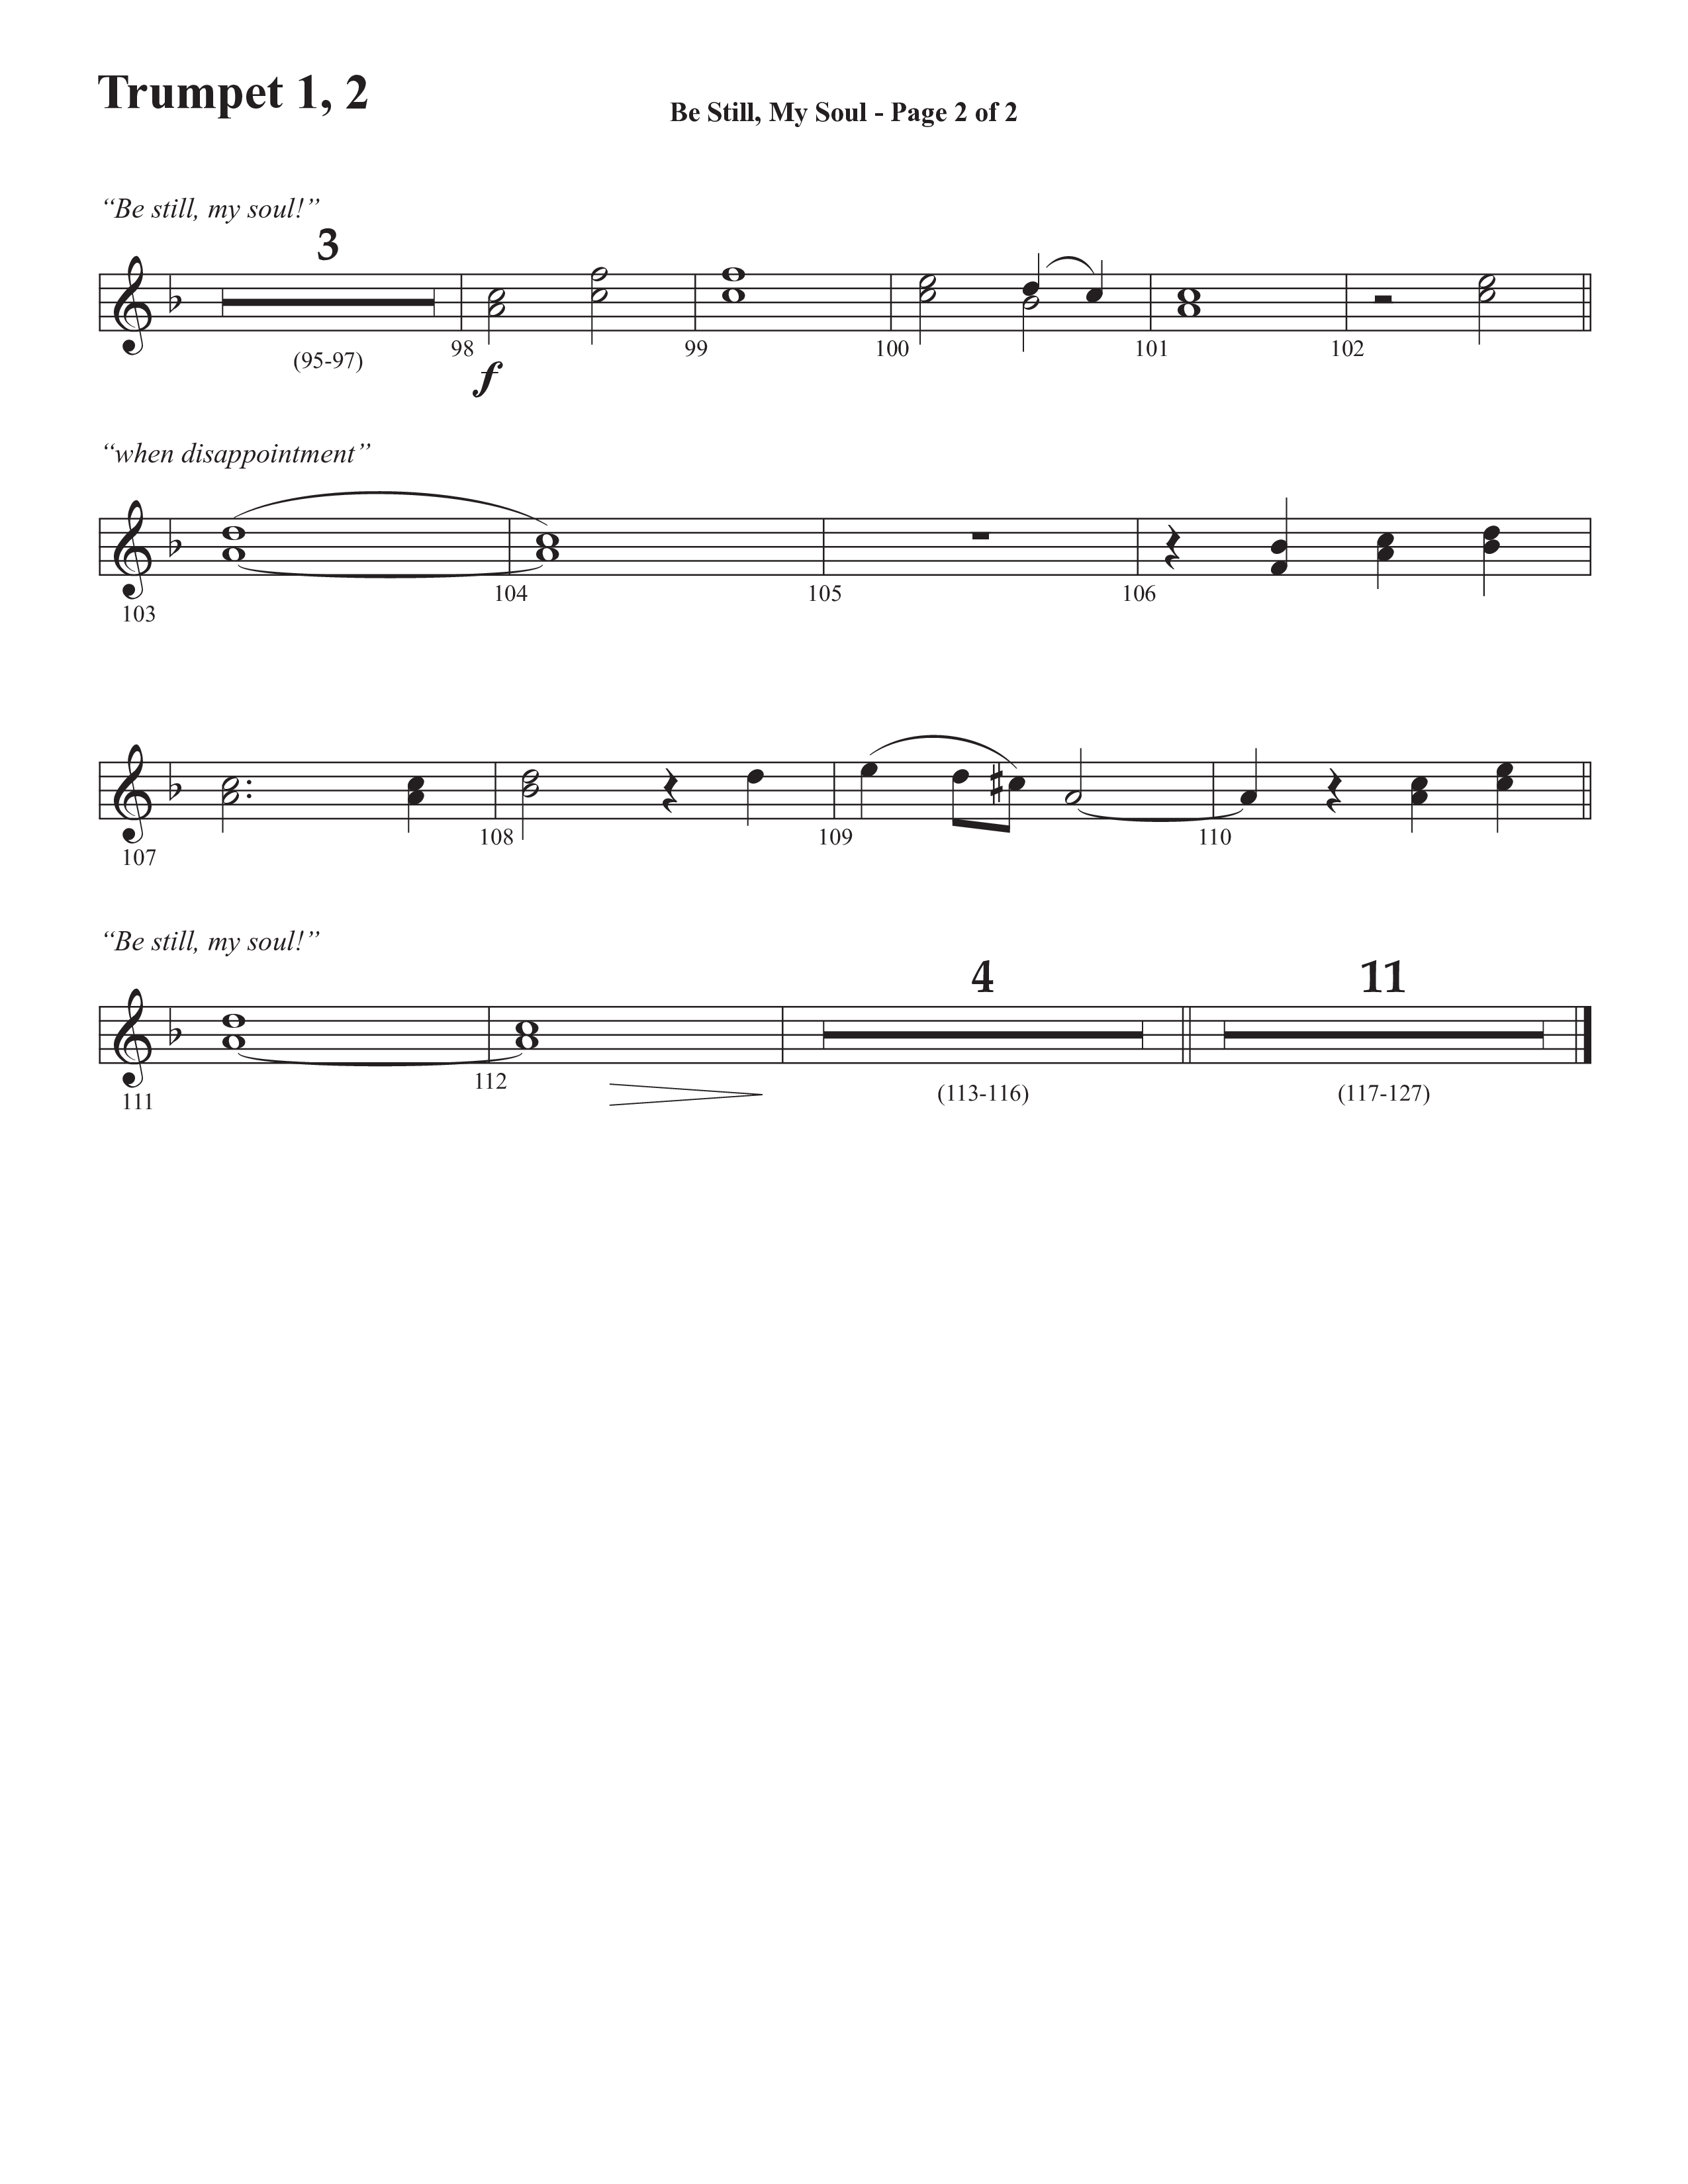 Be Still My Soul (Choral Anthem SATB) Trumpet 1,2 (Semsen Music / Arr. Cliff Duren)